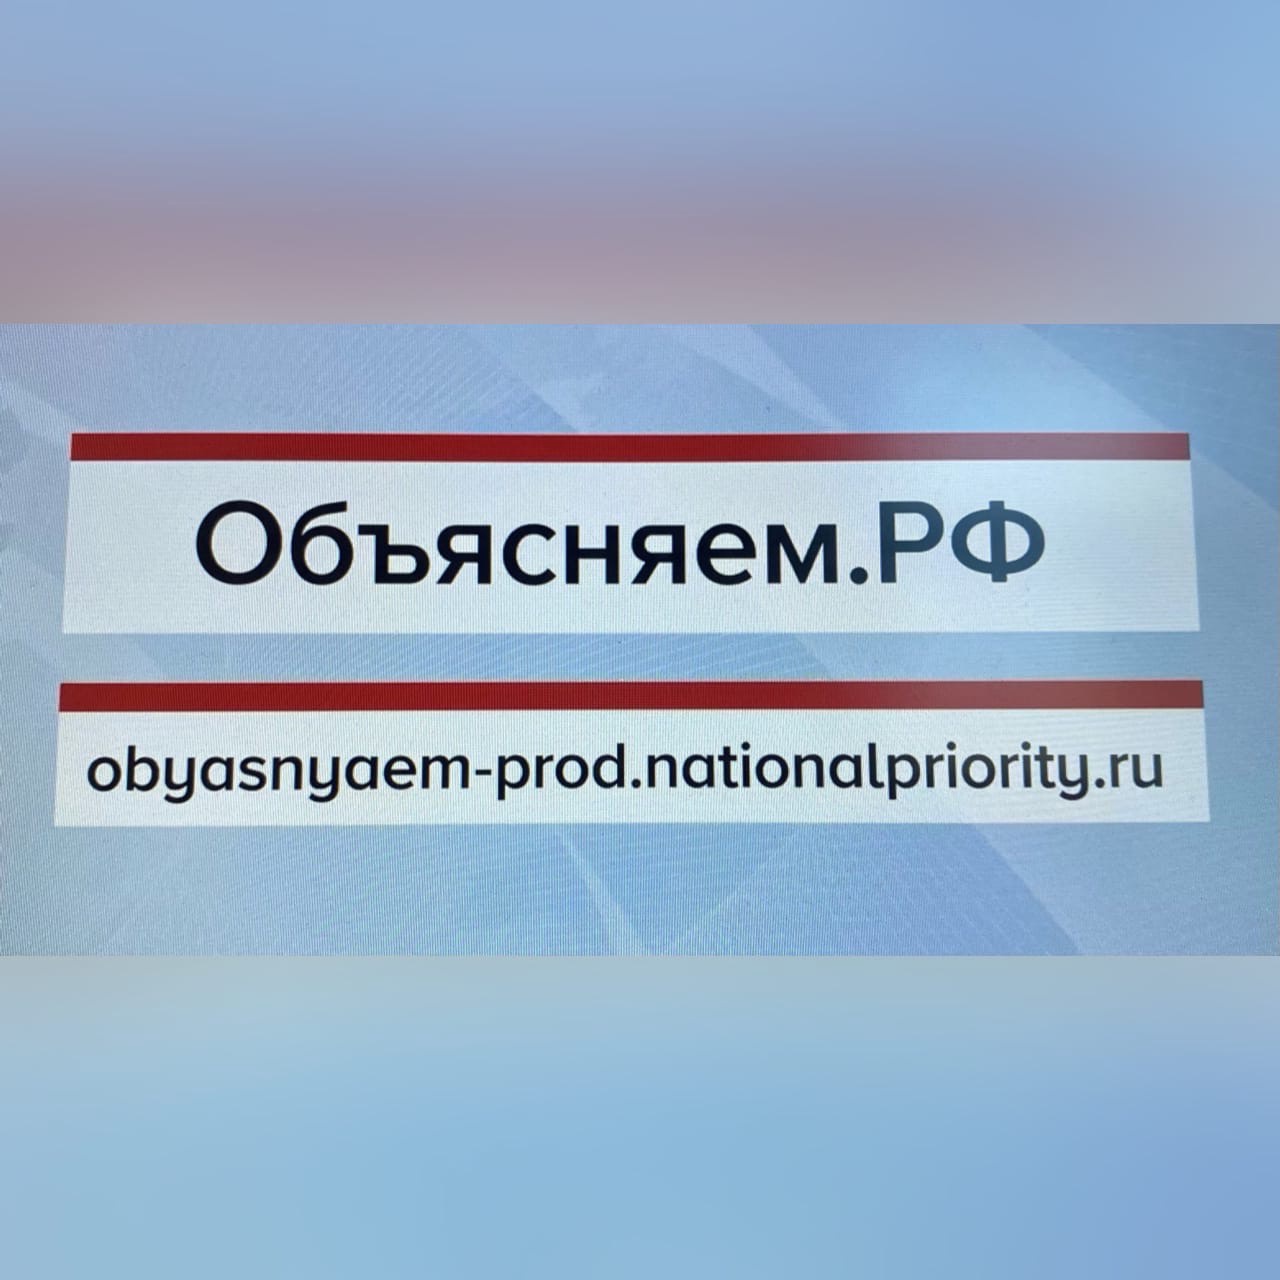 В России запустили портал «Объясняем.рф» с проверенной информацией для борьбы с фейками 